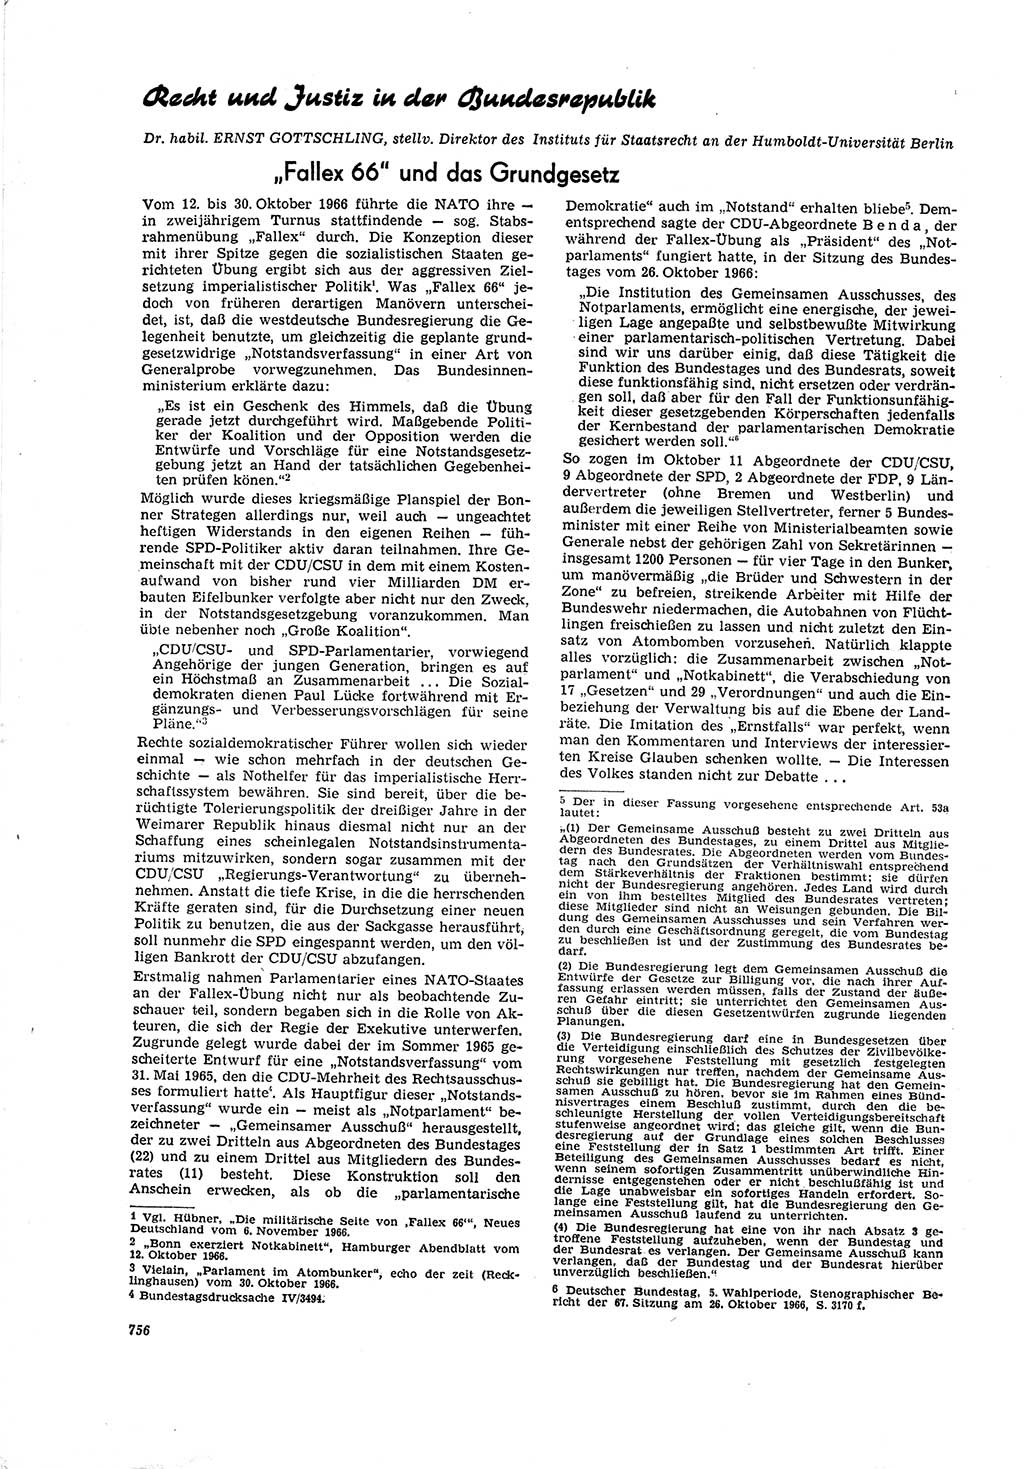 Neue Justiz (NJ), Zeitschrift für Recht und Rechtswissenschaft [Deutsche Demokratische Republik (DDR)], 20. Jahrgang 1966, Seite 756 (NJ DDR 1966, S. 756)